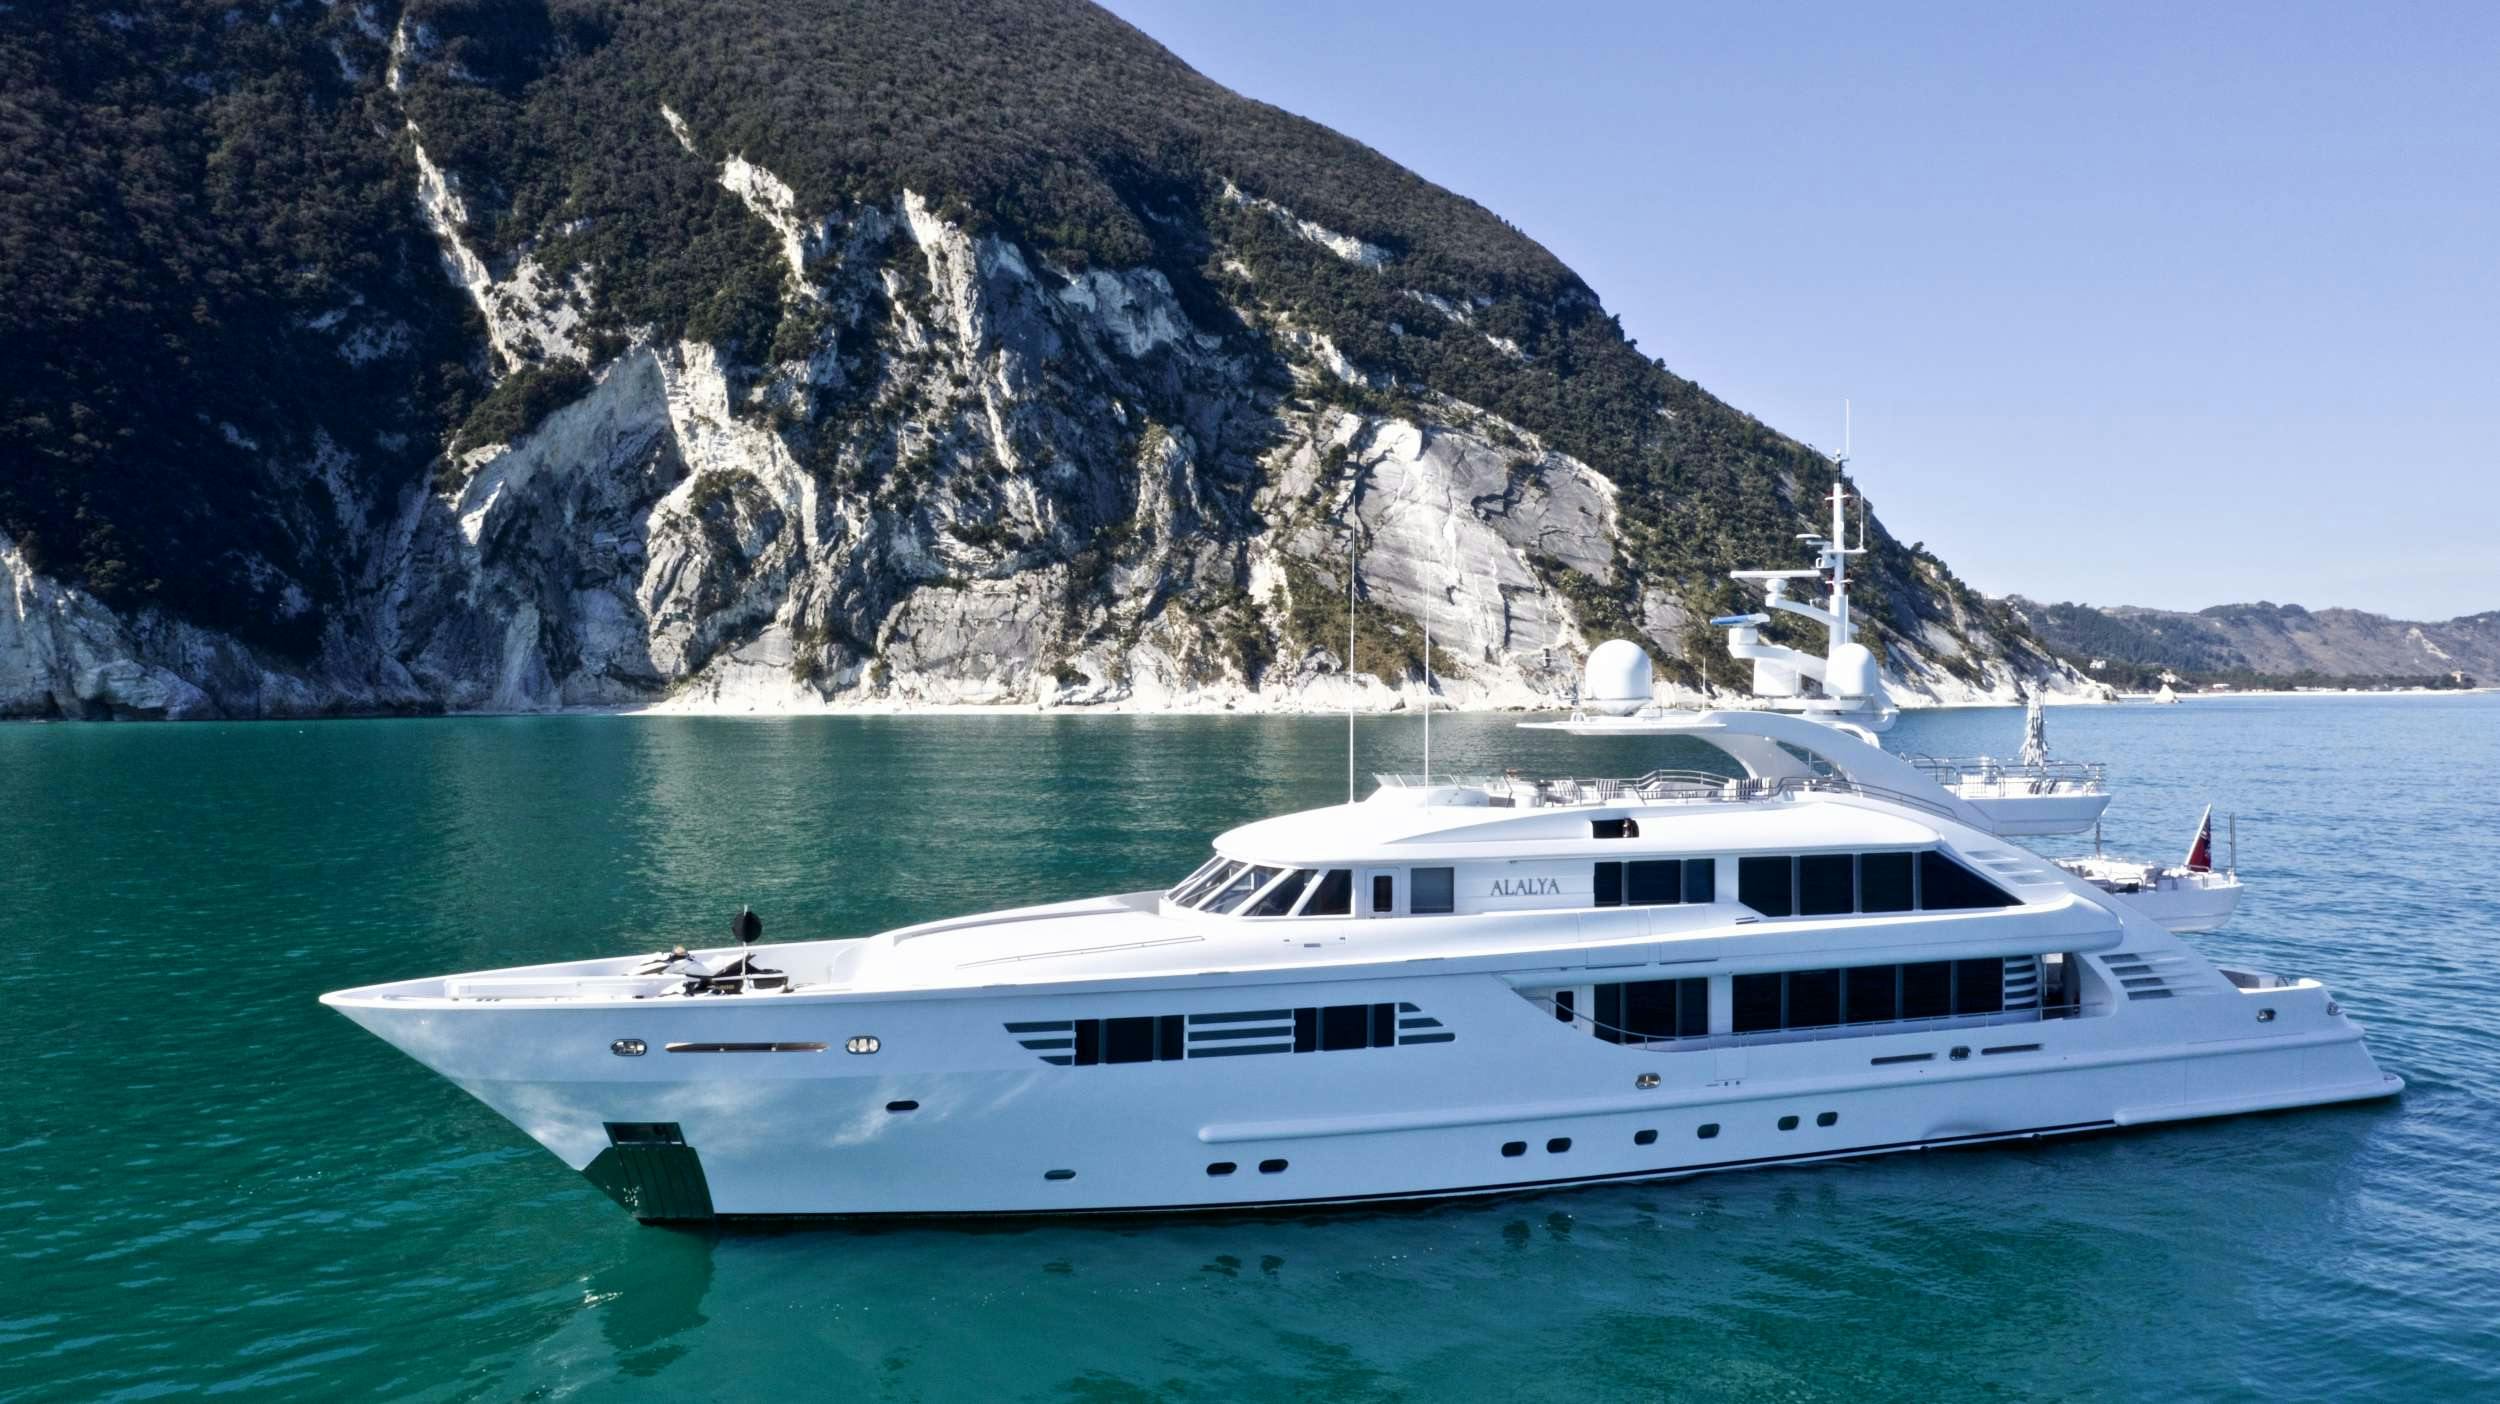 ALALYA - Yacht Charter Sardinia & Boat hire in Riviera, Cors, Sard, Italy, Spain, Turkey, Croatia, Greece 1